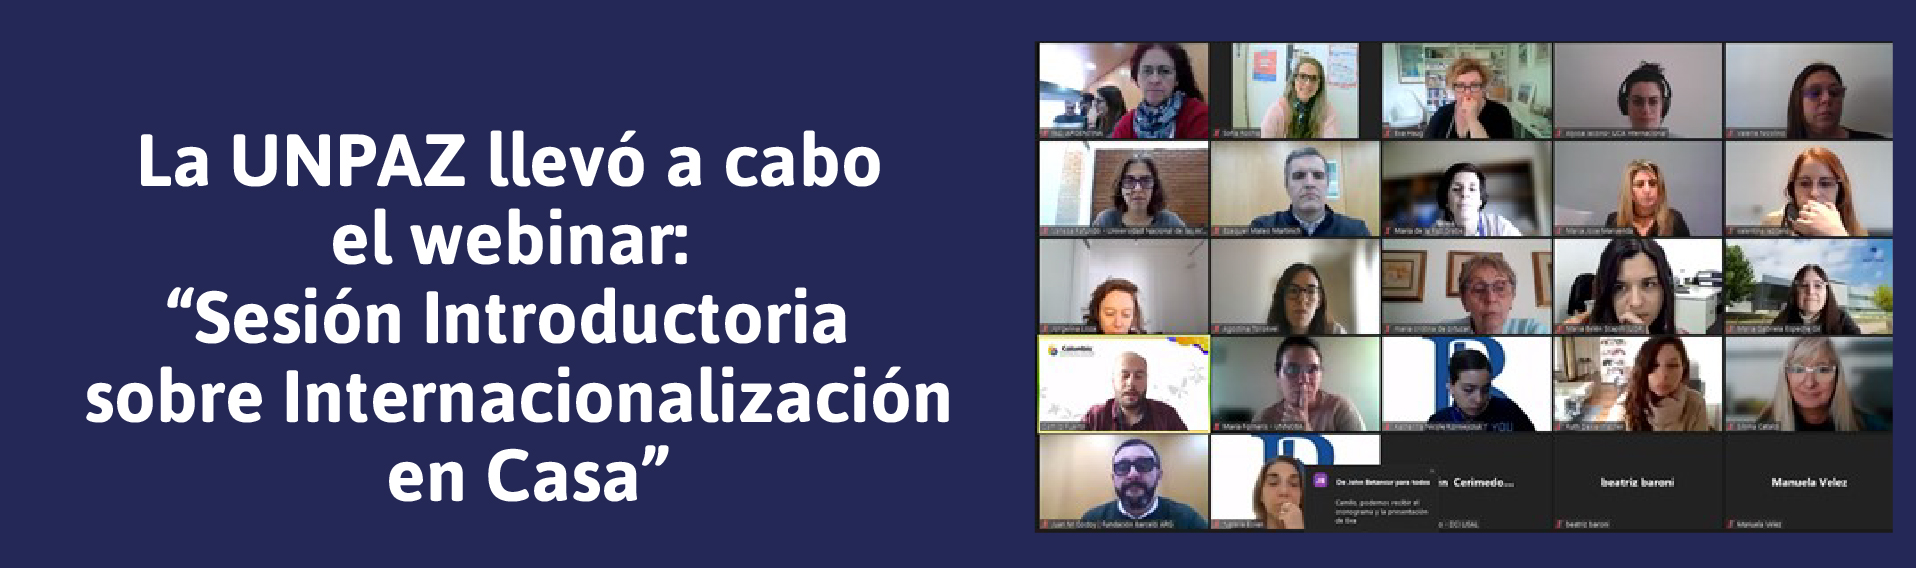 La UNPAZ llevó a cabo el webinar “Sesión Introductoria sobre Internacionalización en Casa”